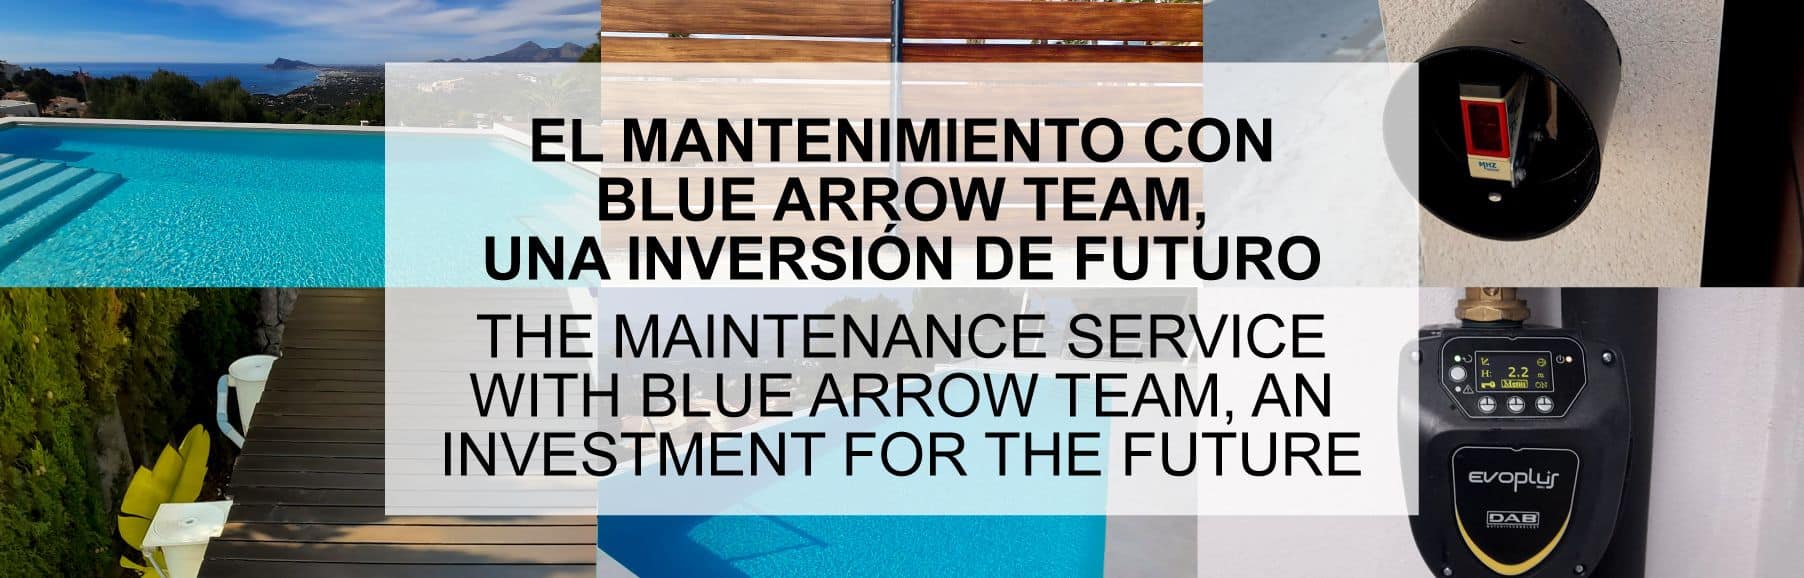 blue arrow team